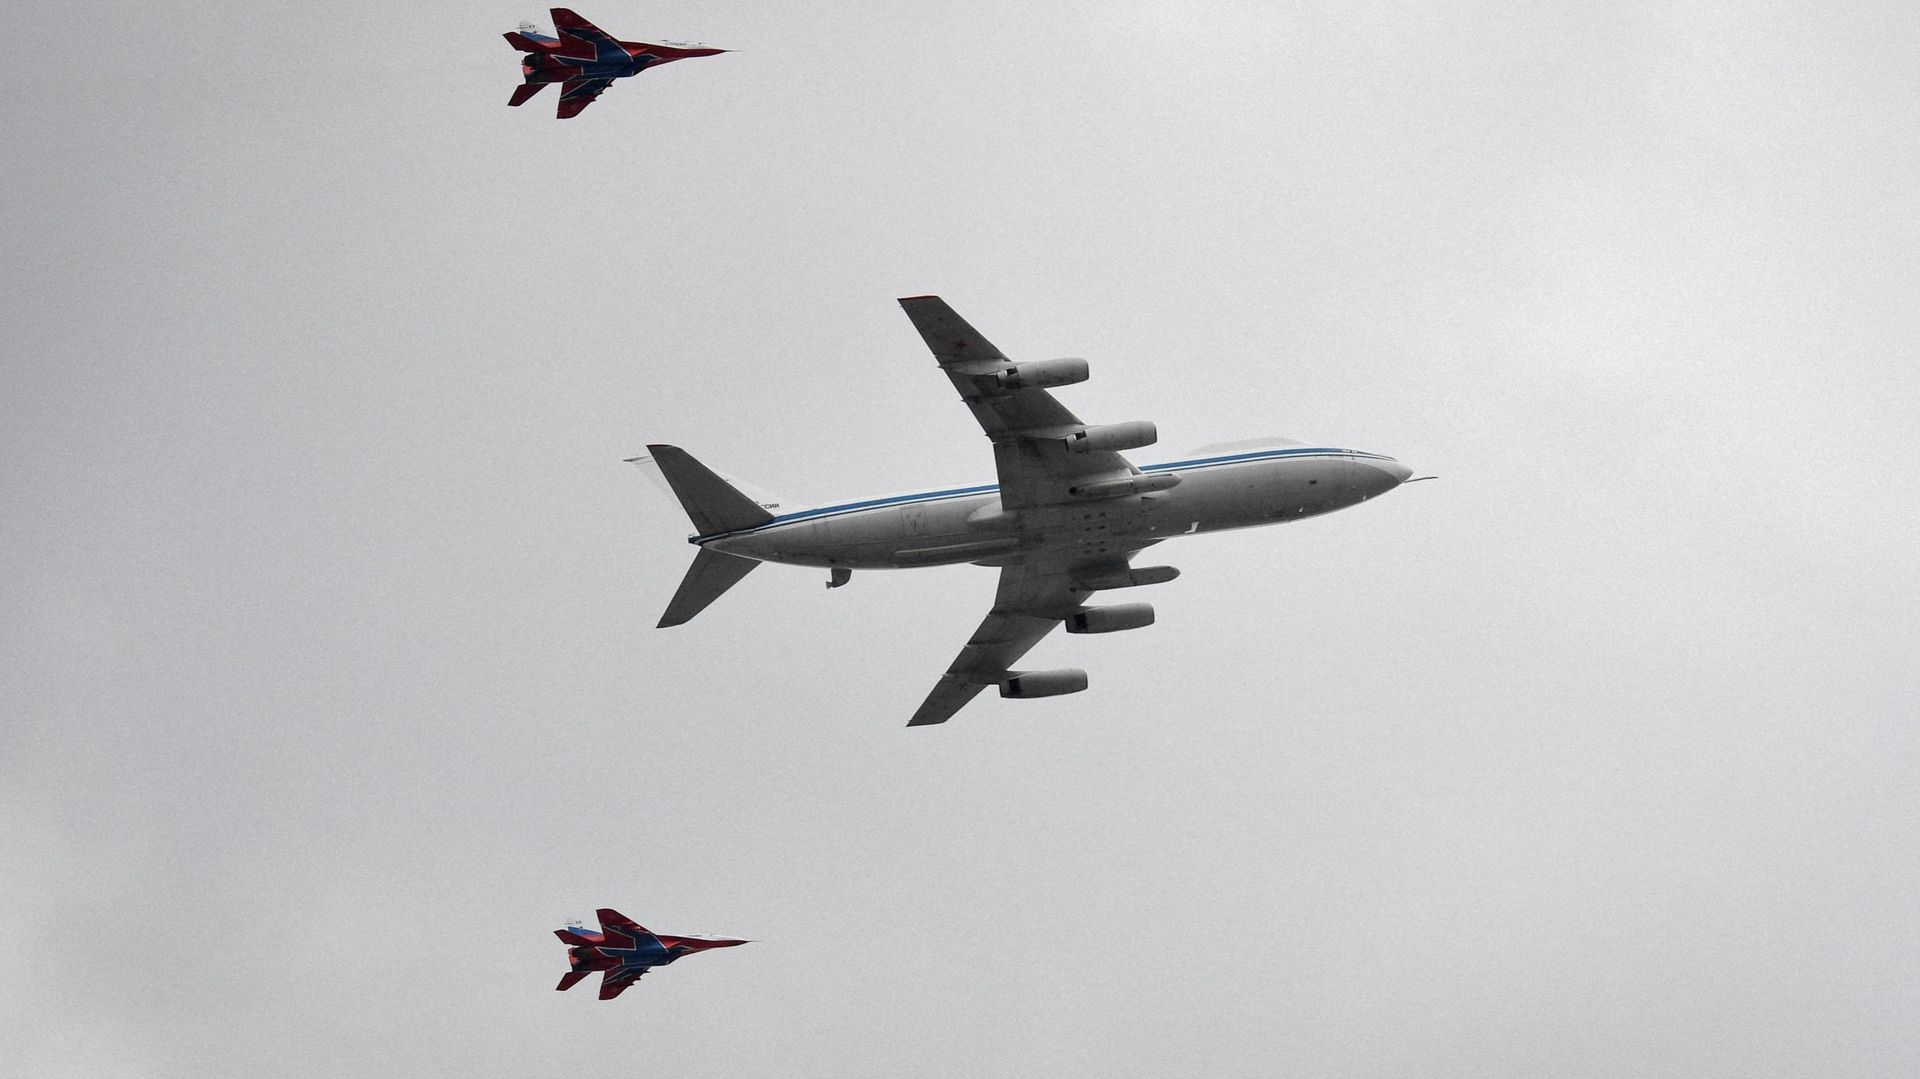 Le Iliouchine II-80 entouré de MiG-29 dans le ciel de Moscou, le 4 mai 2022.